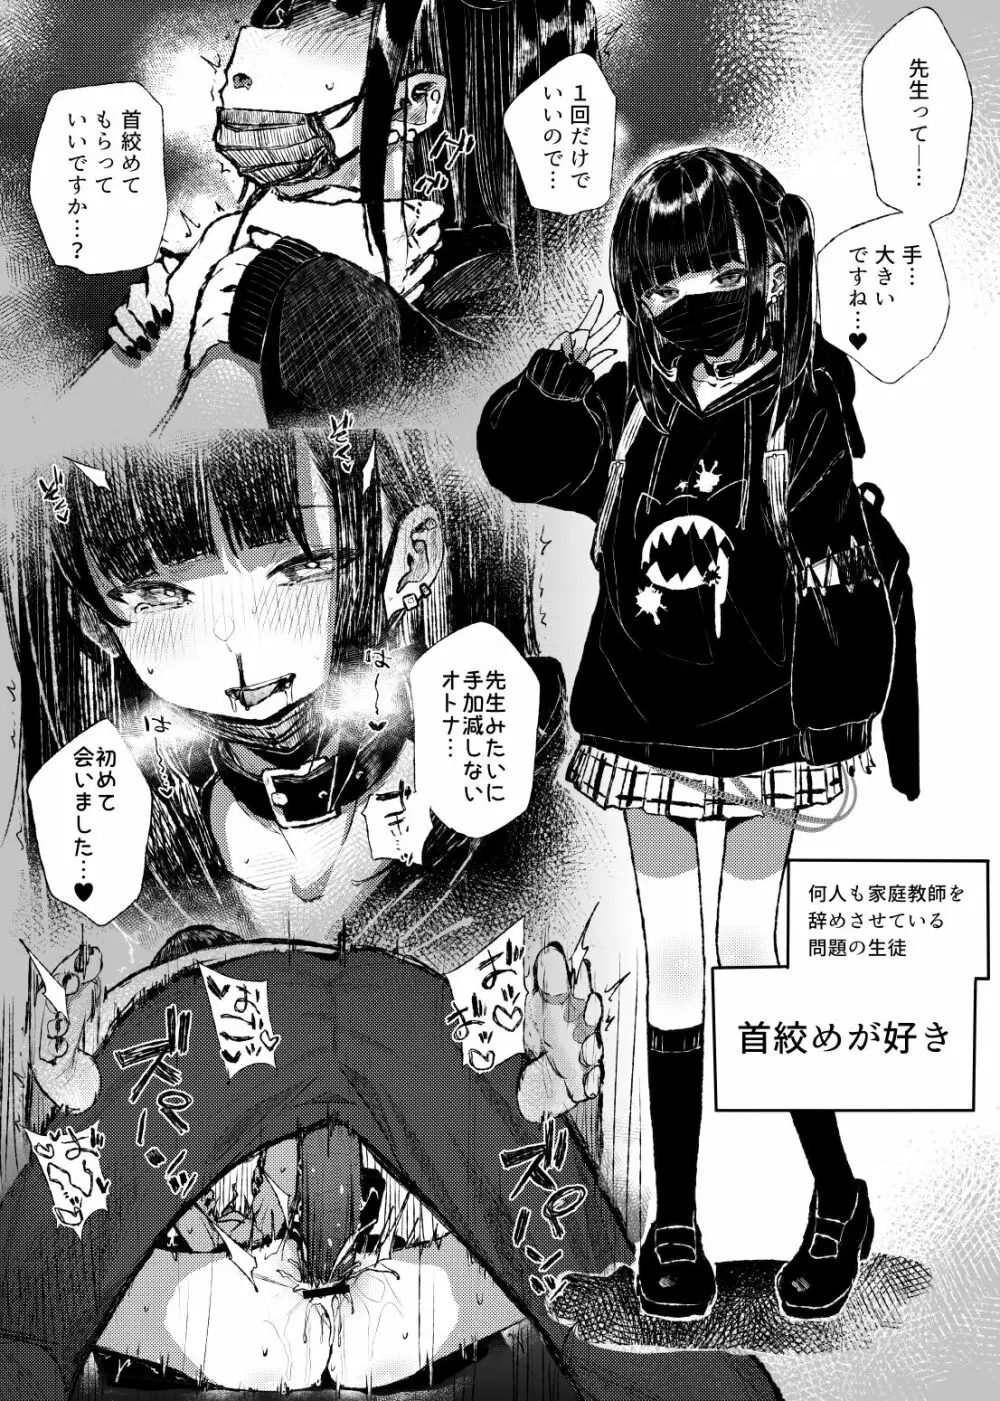 首絞め地雷系少女漫画 - 同人誌 - エロ漫画 - NyaHentai